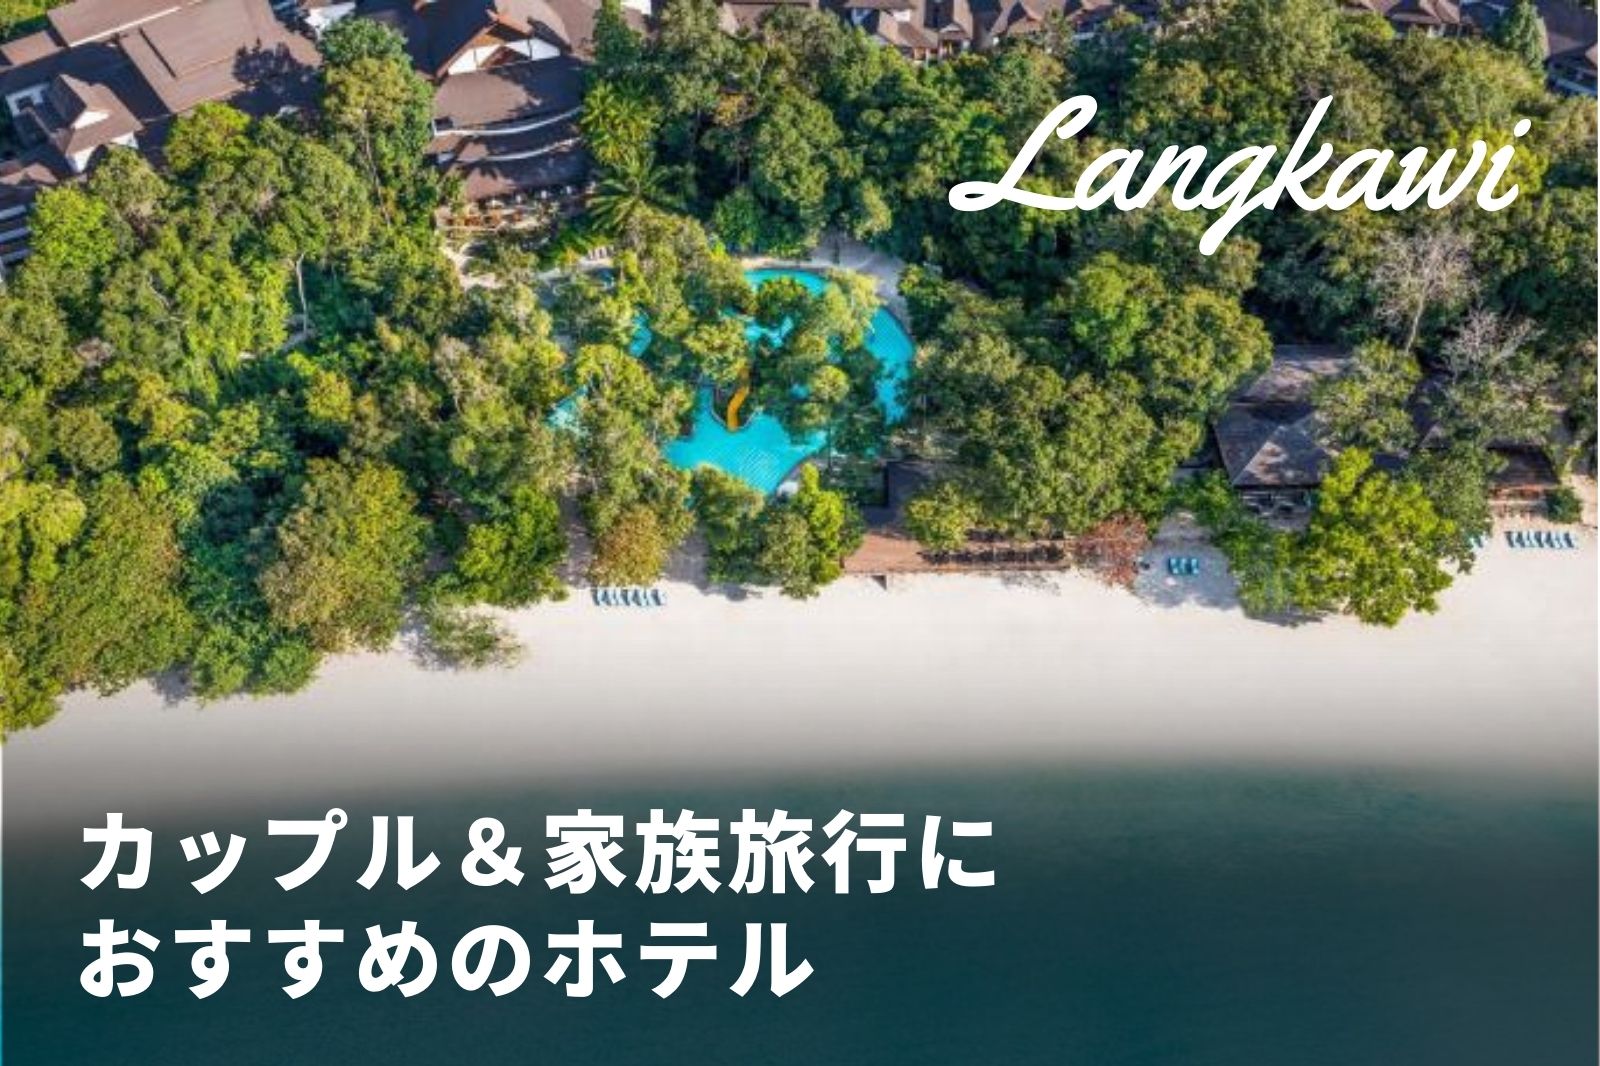 ランカウイ旅行 カップルや家族に人気のホテルまとめ 目的別にご紹介 トラベルスタンダードジャパン